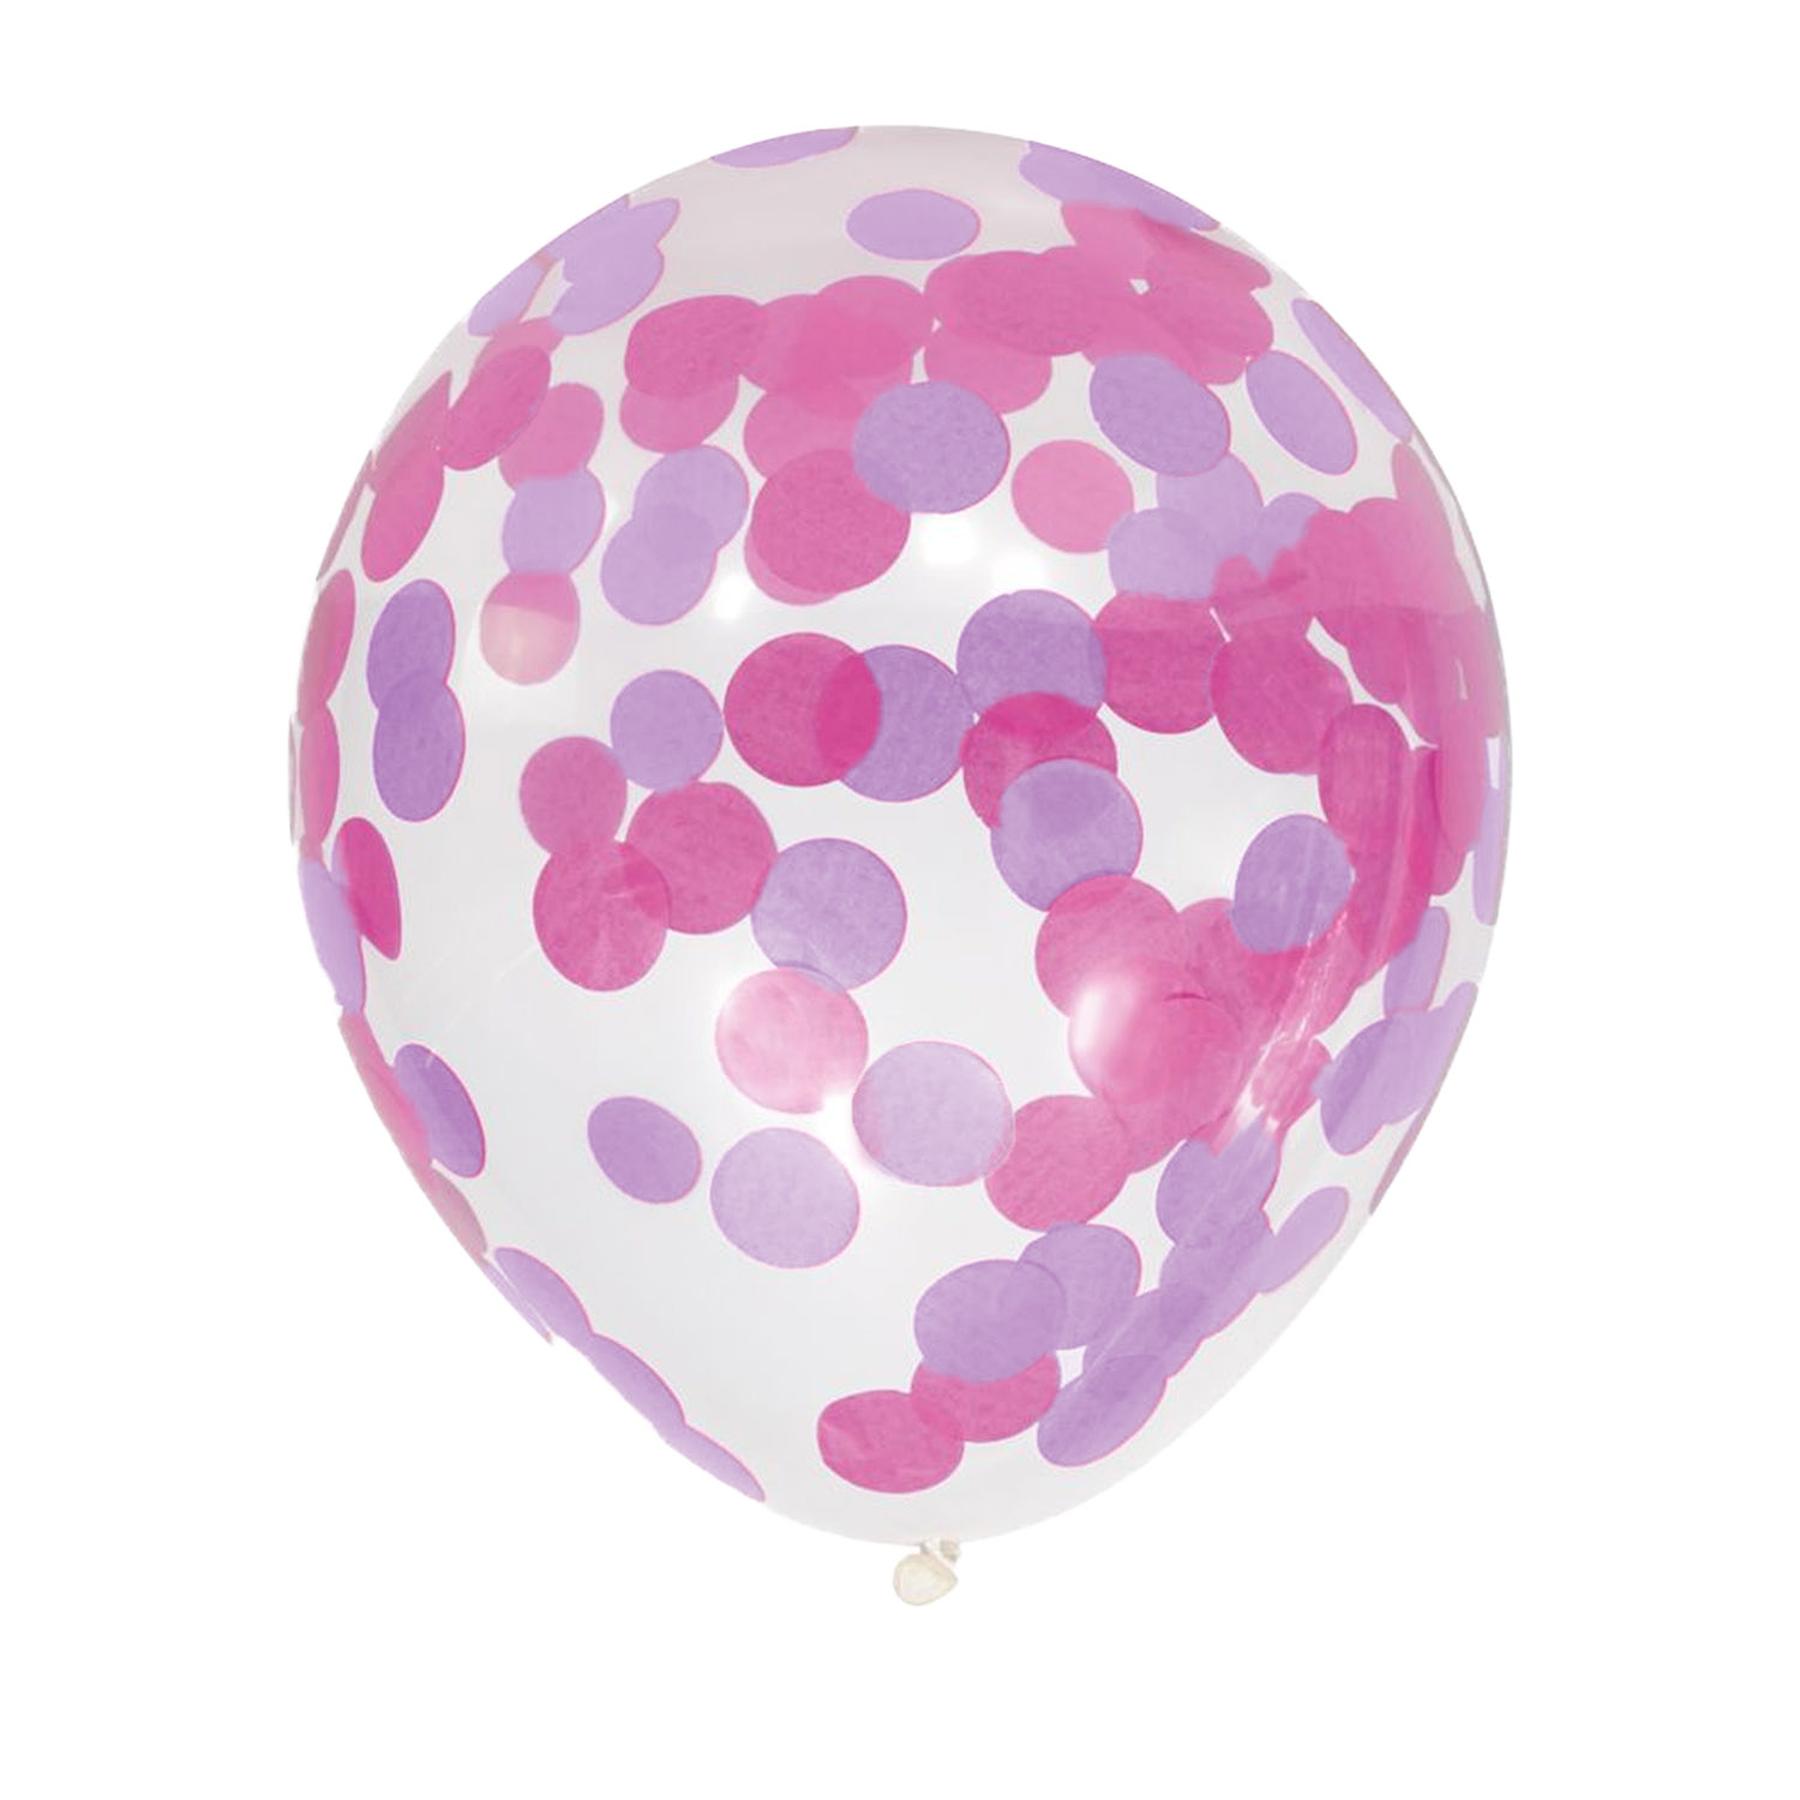 15x Folienballon - Konfetti/12inch - Lila/Pink (15er Set)